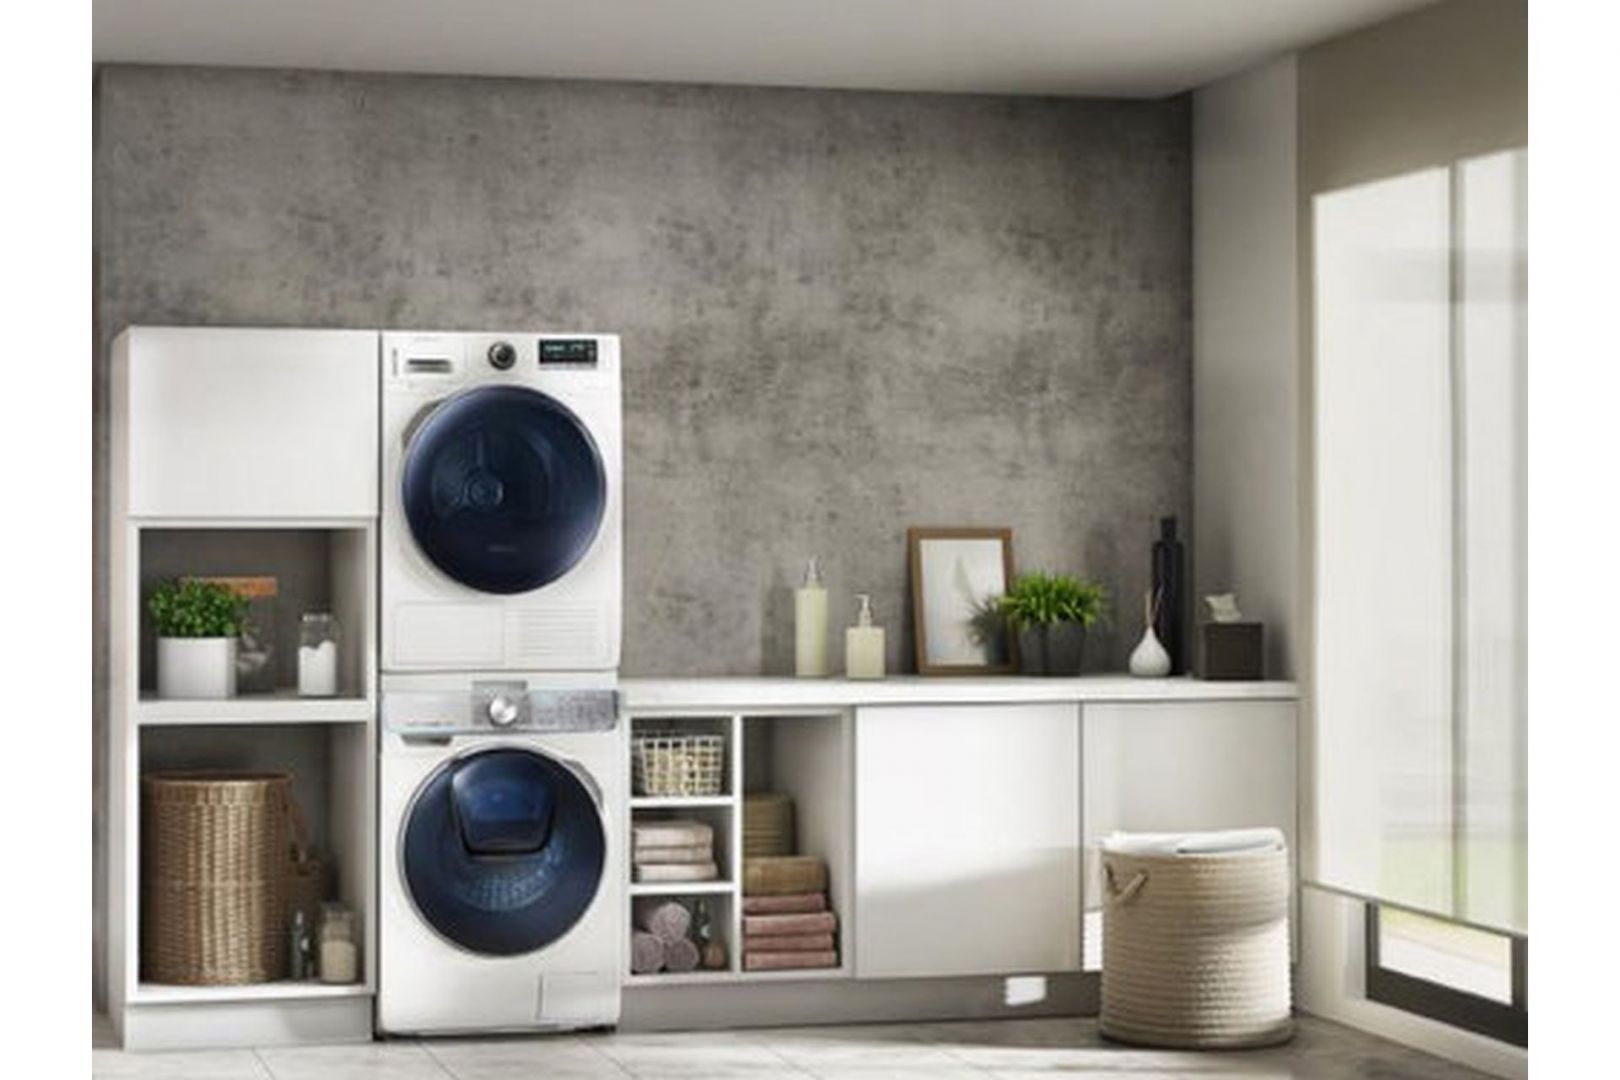 Mitem jest, że węższe pralki mają małą pojemność czy nie posiadają wszystkich niezbędnych funkcji, które pomagają dbać o ubrania. Fot. Samsung